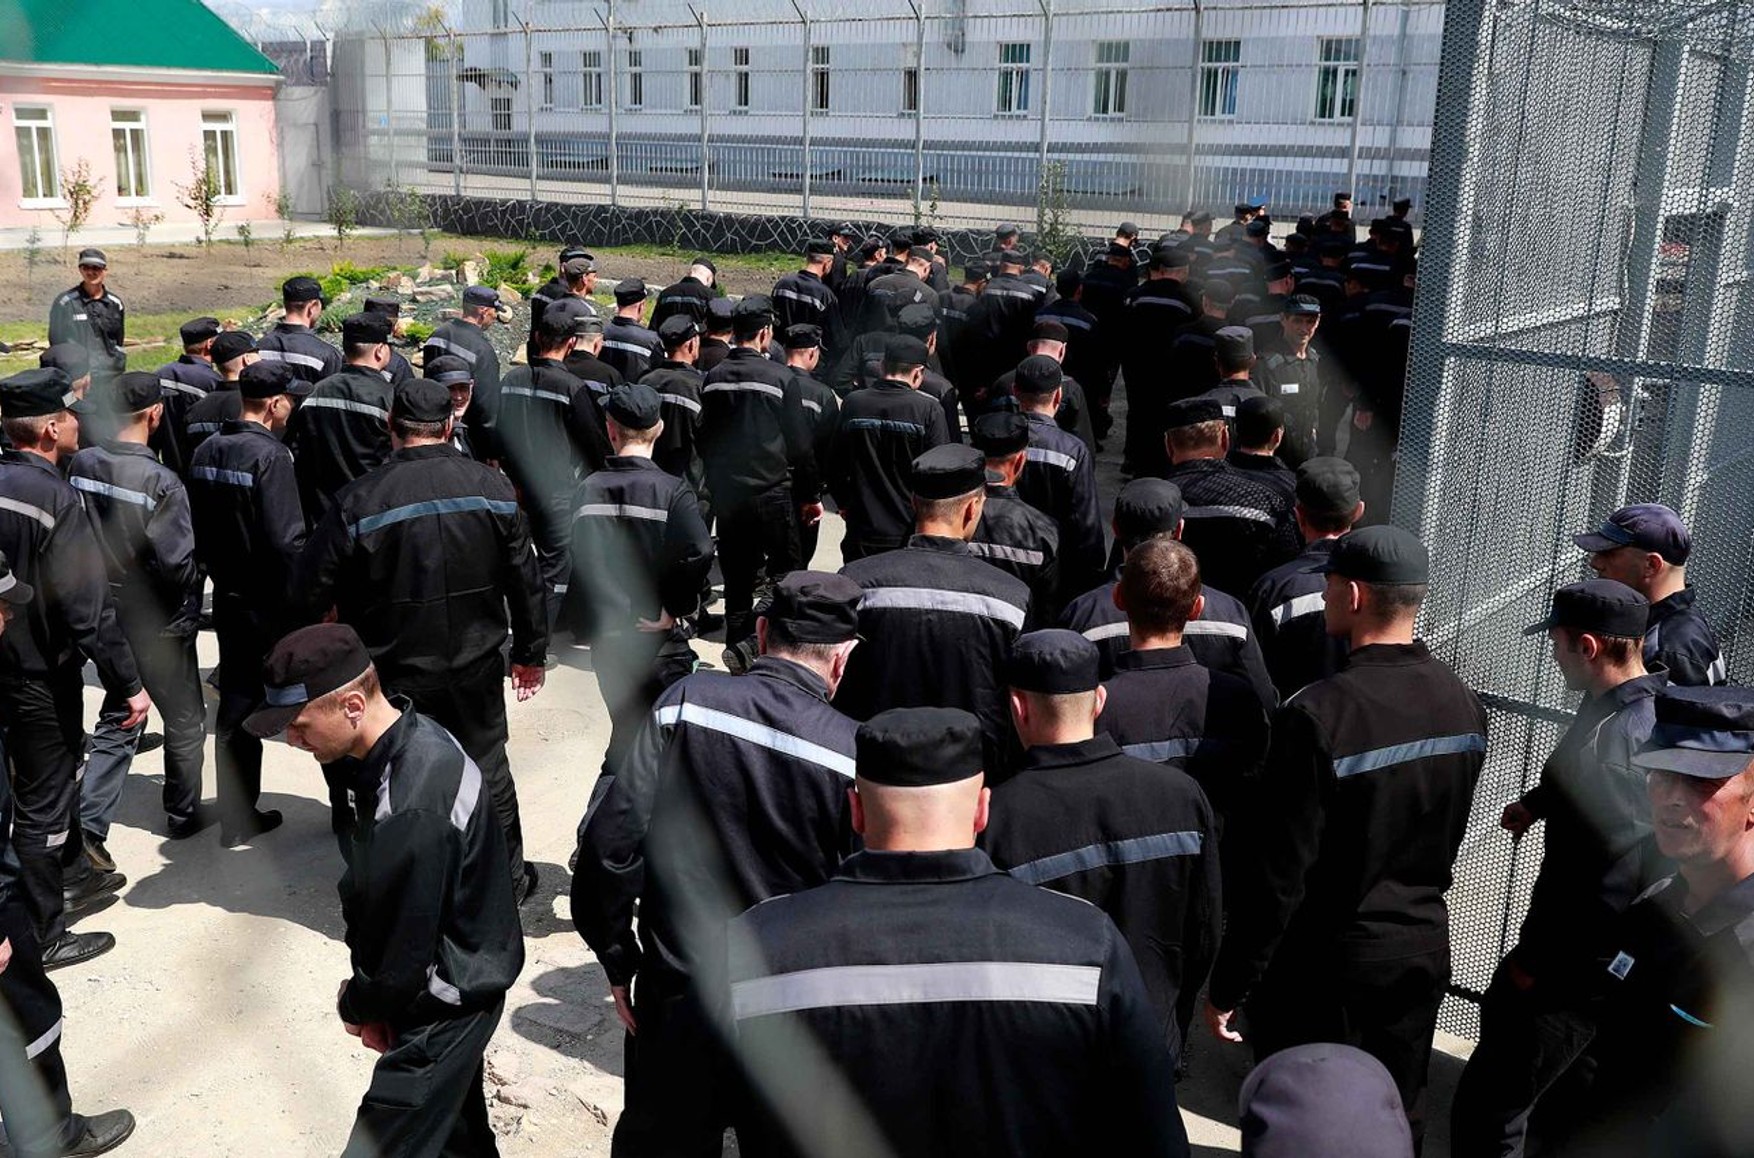 Российских заключенных ждет свобода, если на войне они проявят «мужество и героизм», — законопроект